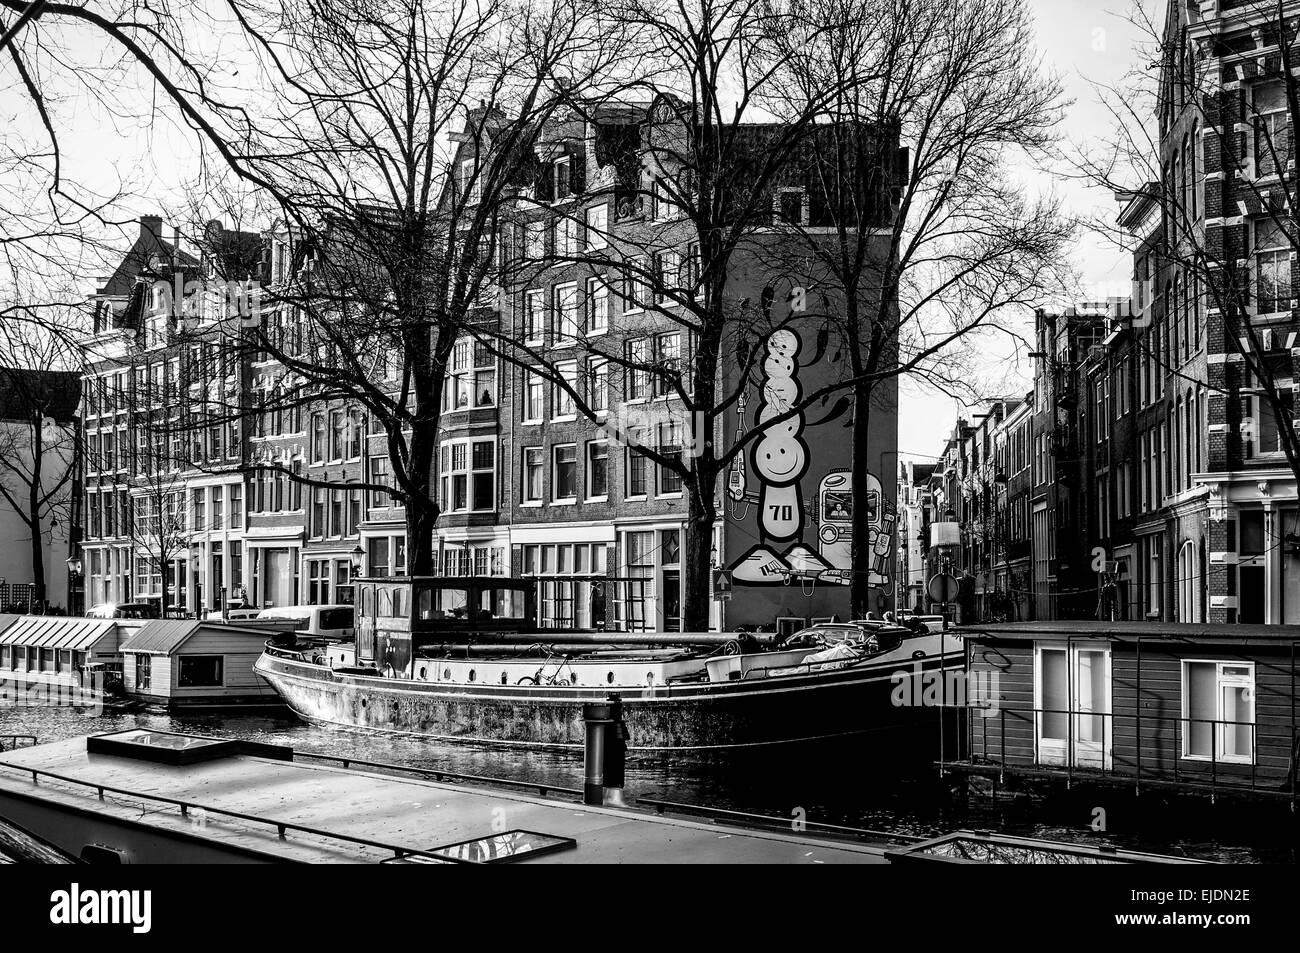 Bateaux du canal en hiver à Amsterdam. Noir et blanc. Banque D'Images